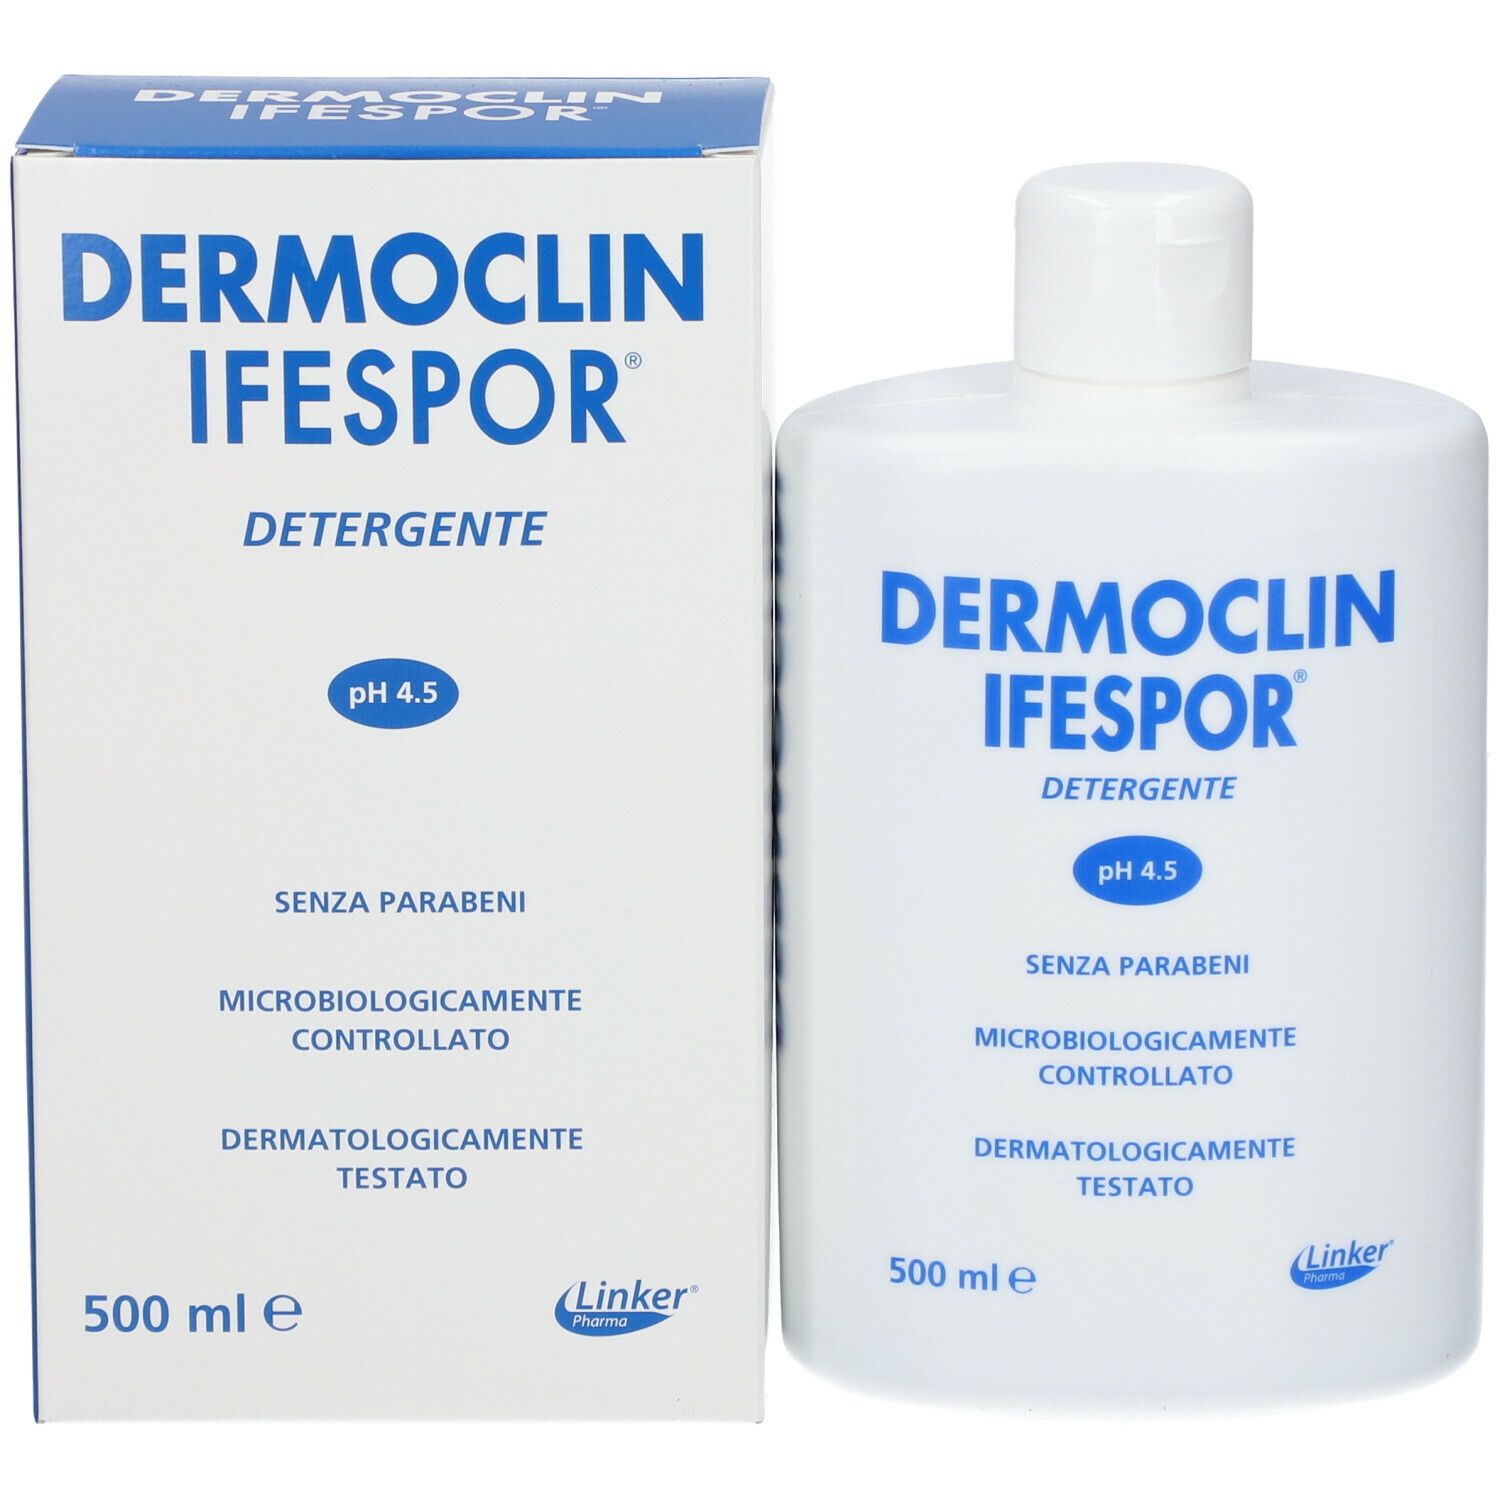 Dermoclin Ifespor®